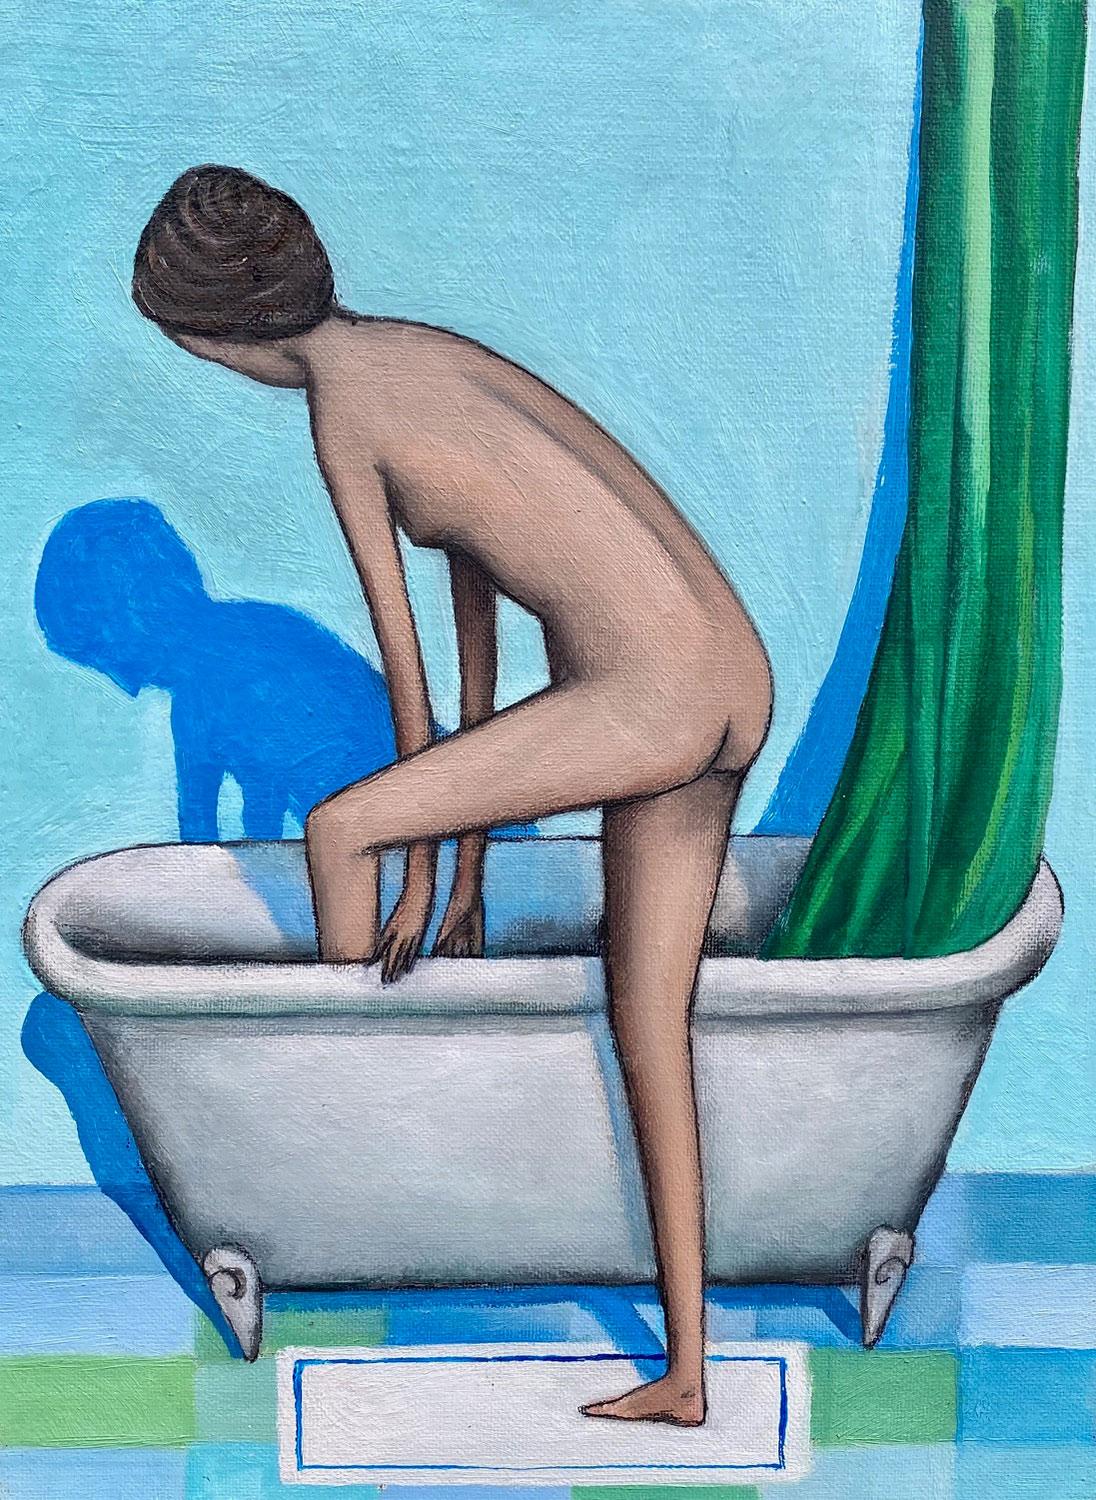 Frauen beim Baden in der Badewanne, Florenz, Italien, 2019